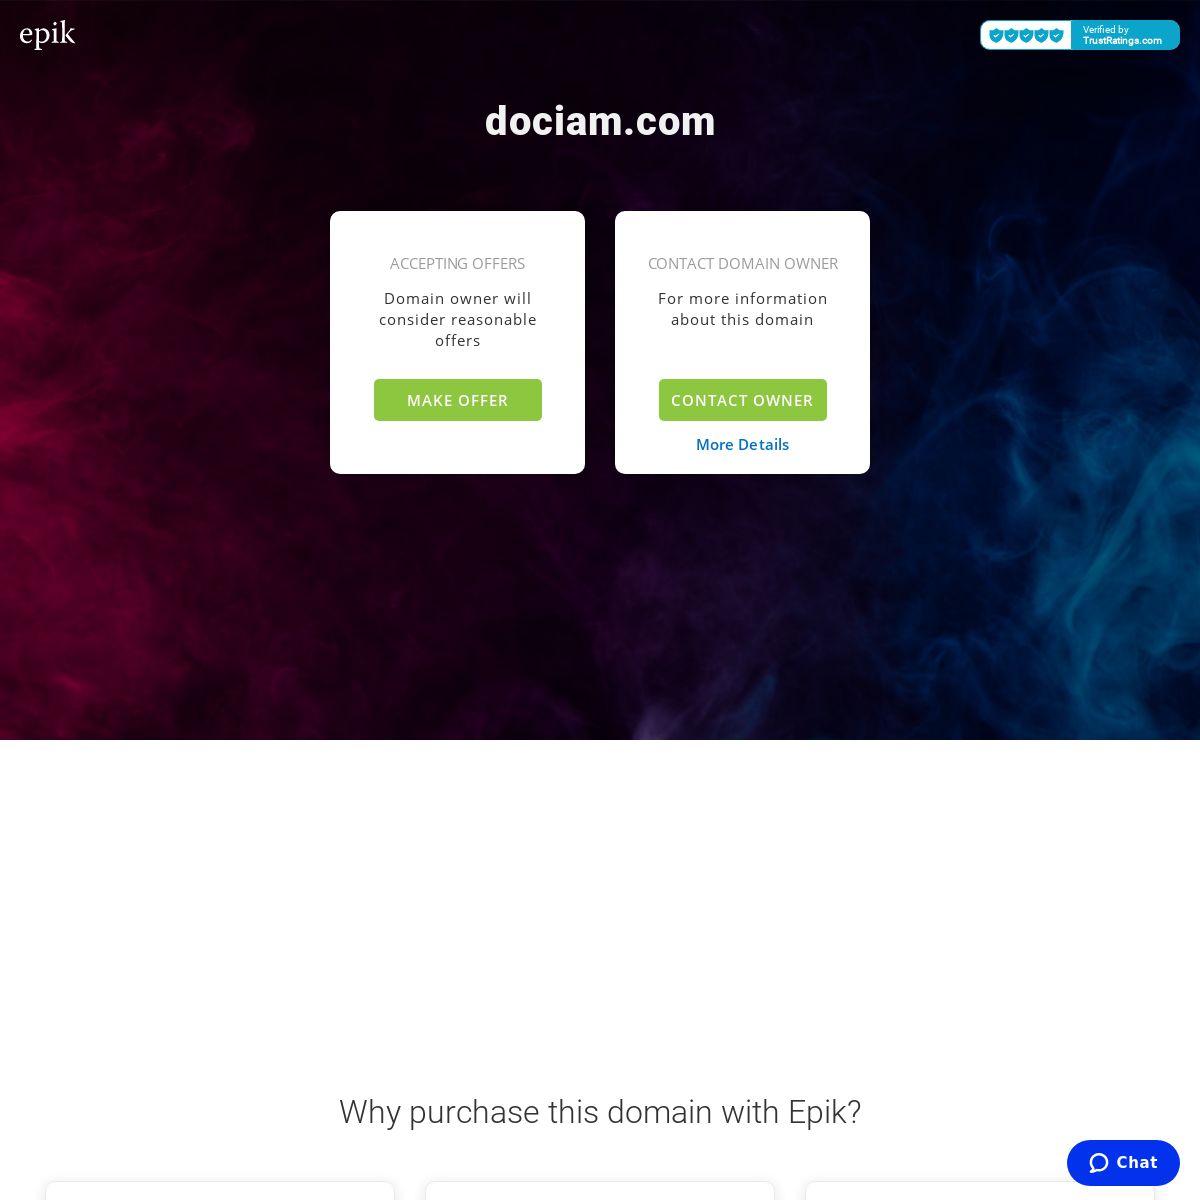 A complete backup of dociam.com